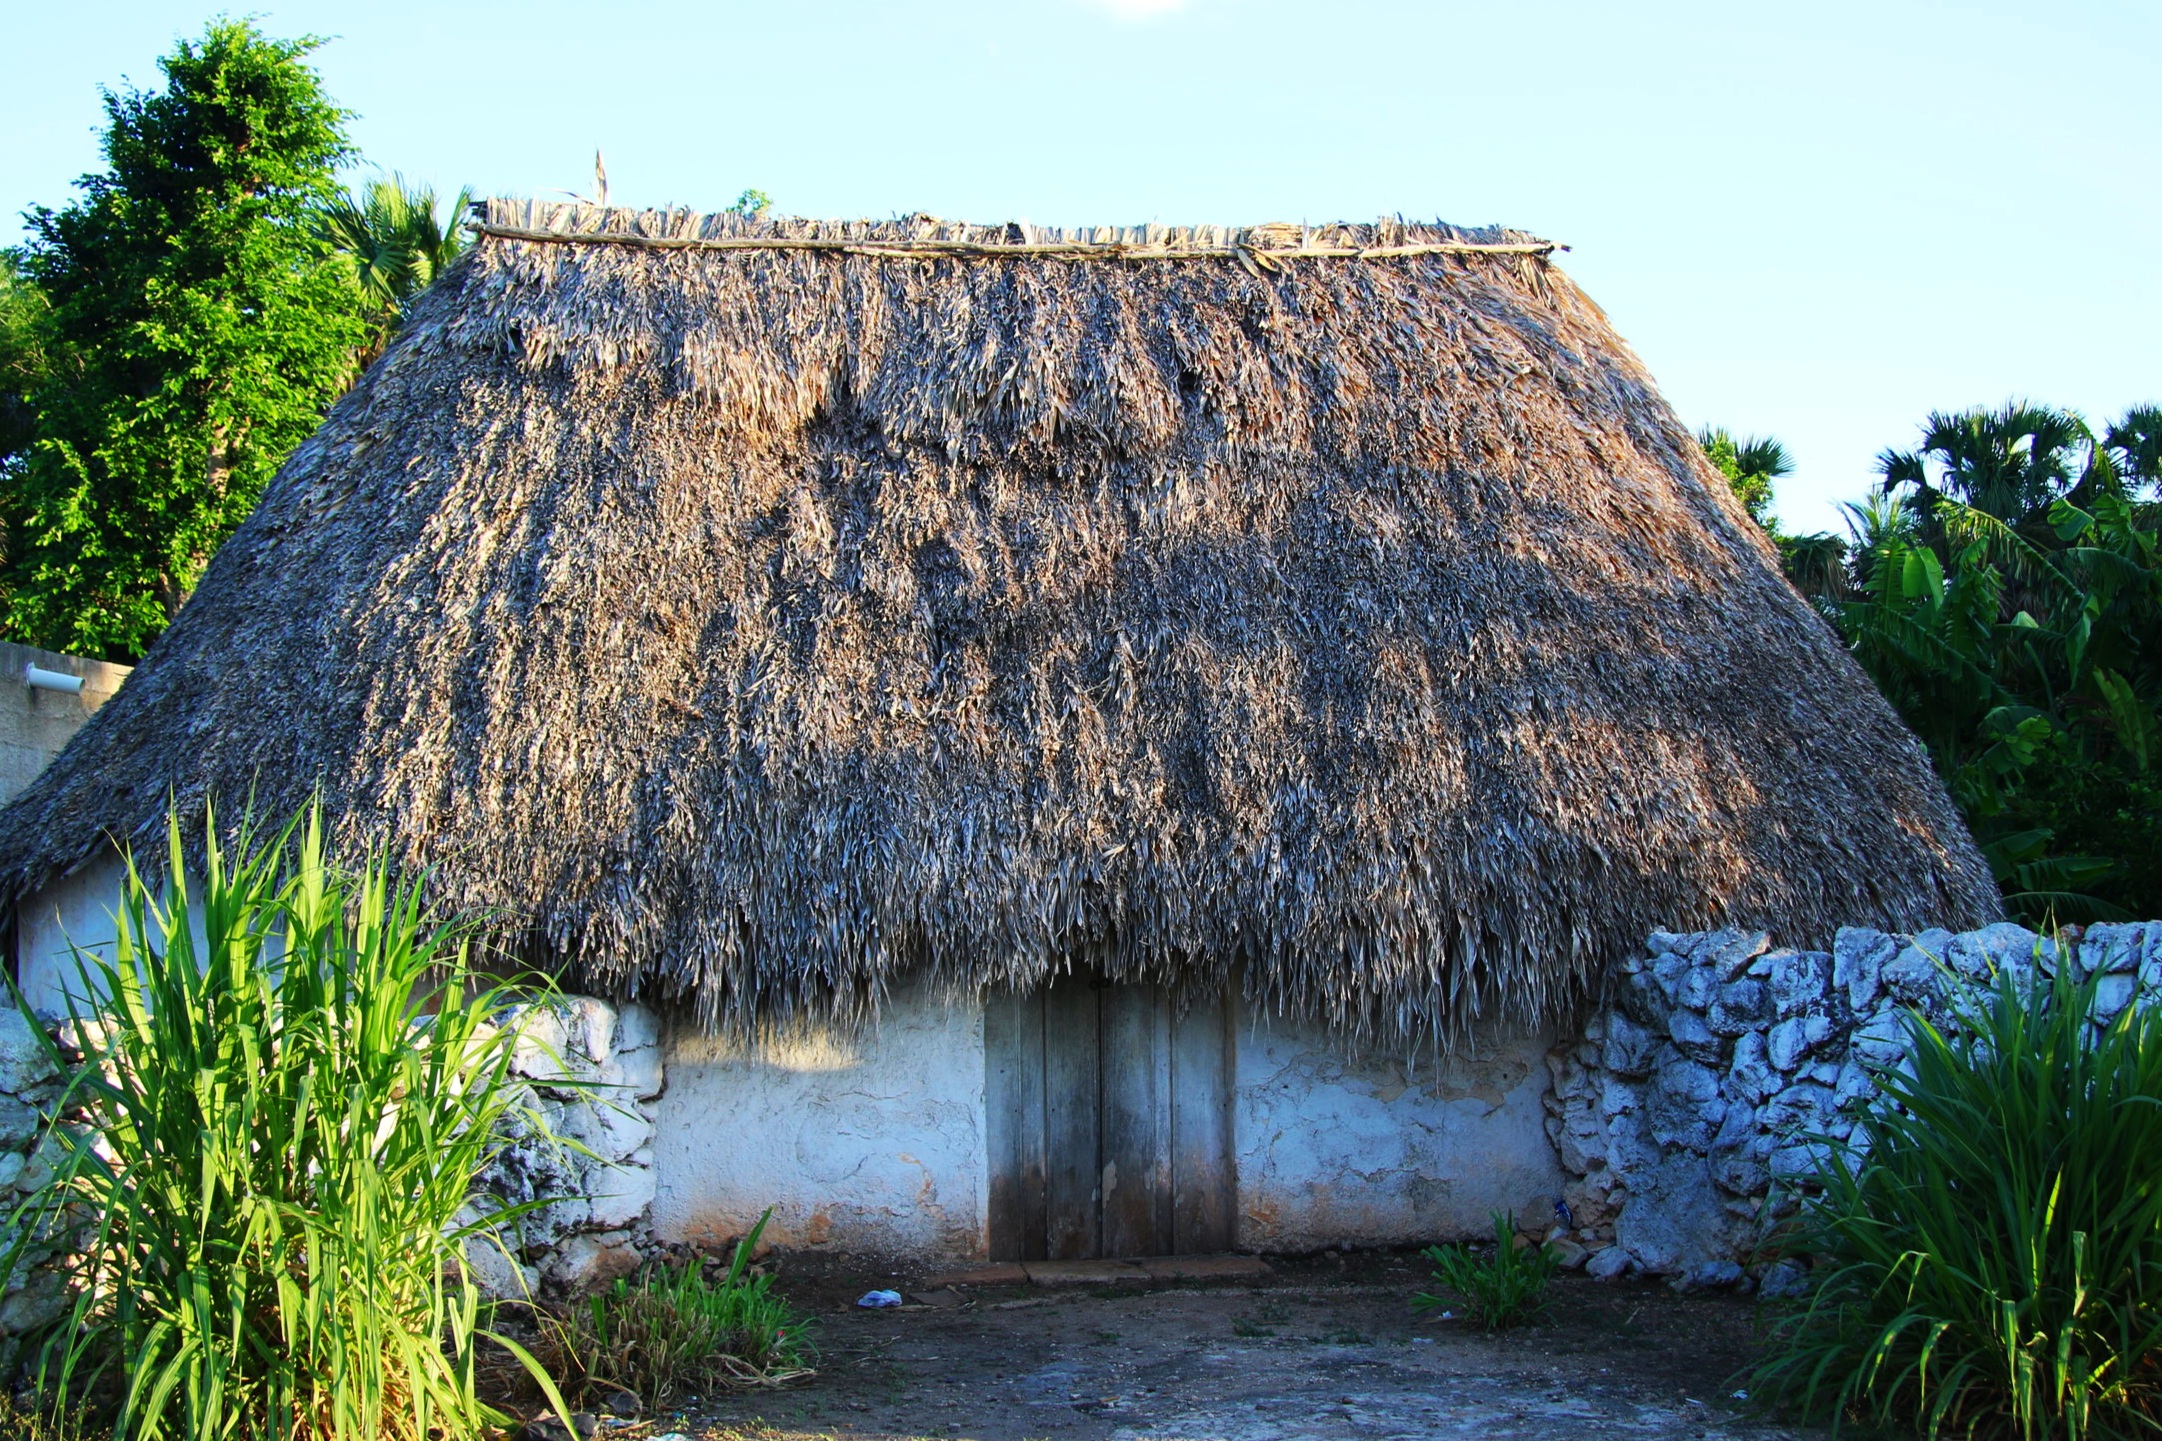  Mayan choza huts on the main street 